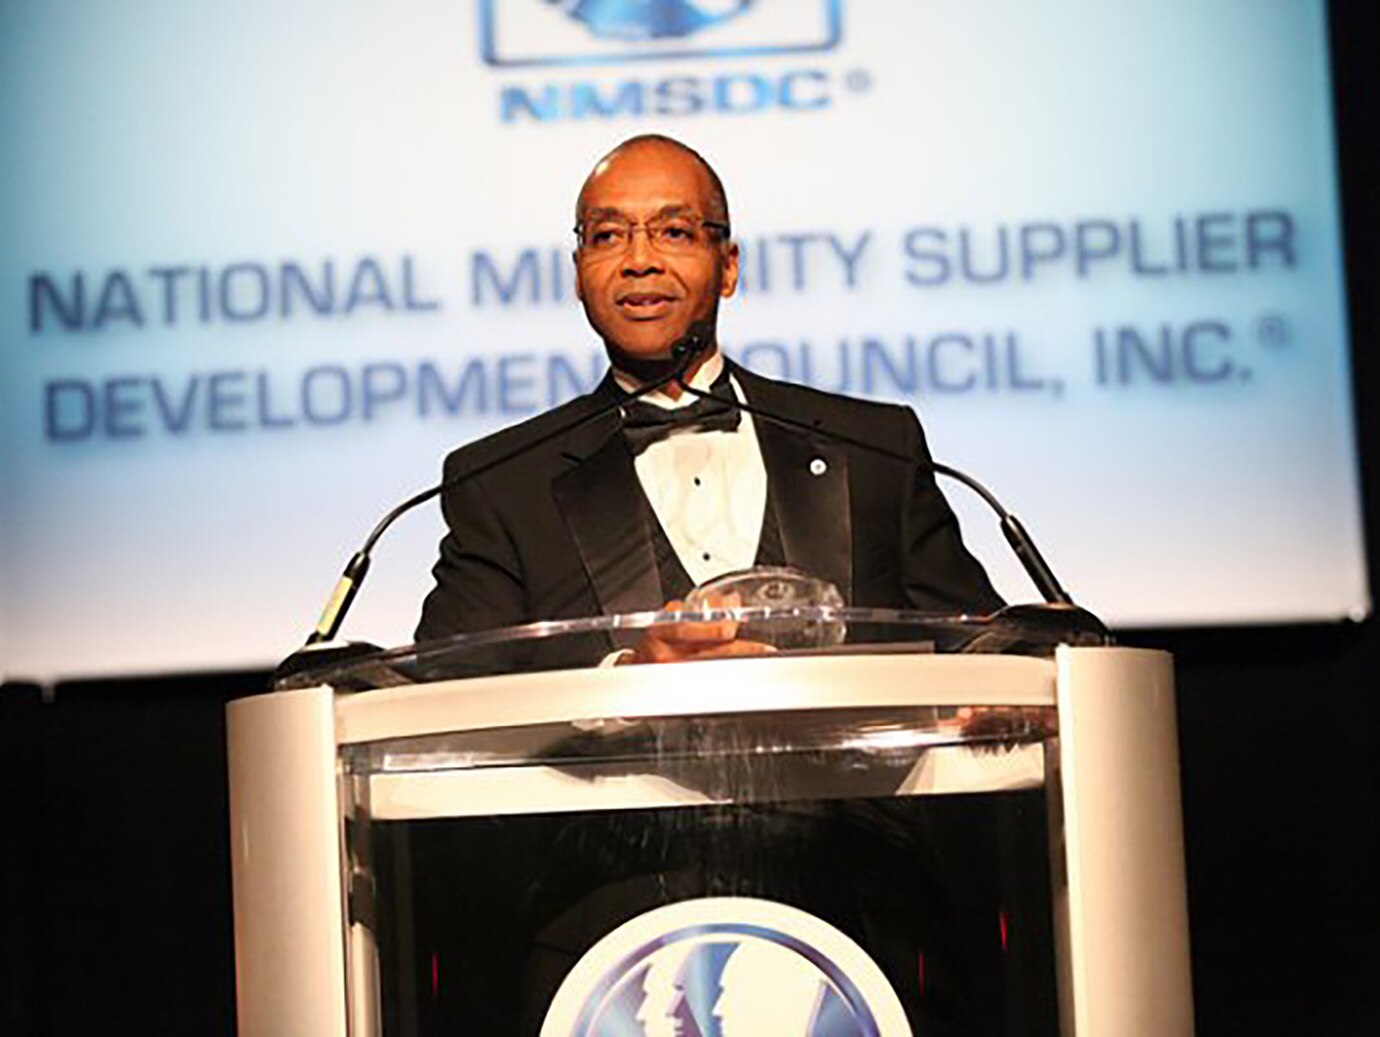 Reginald Layton, executive director of supplier diversity & business development receiving an award